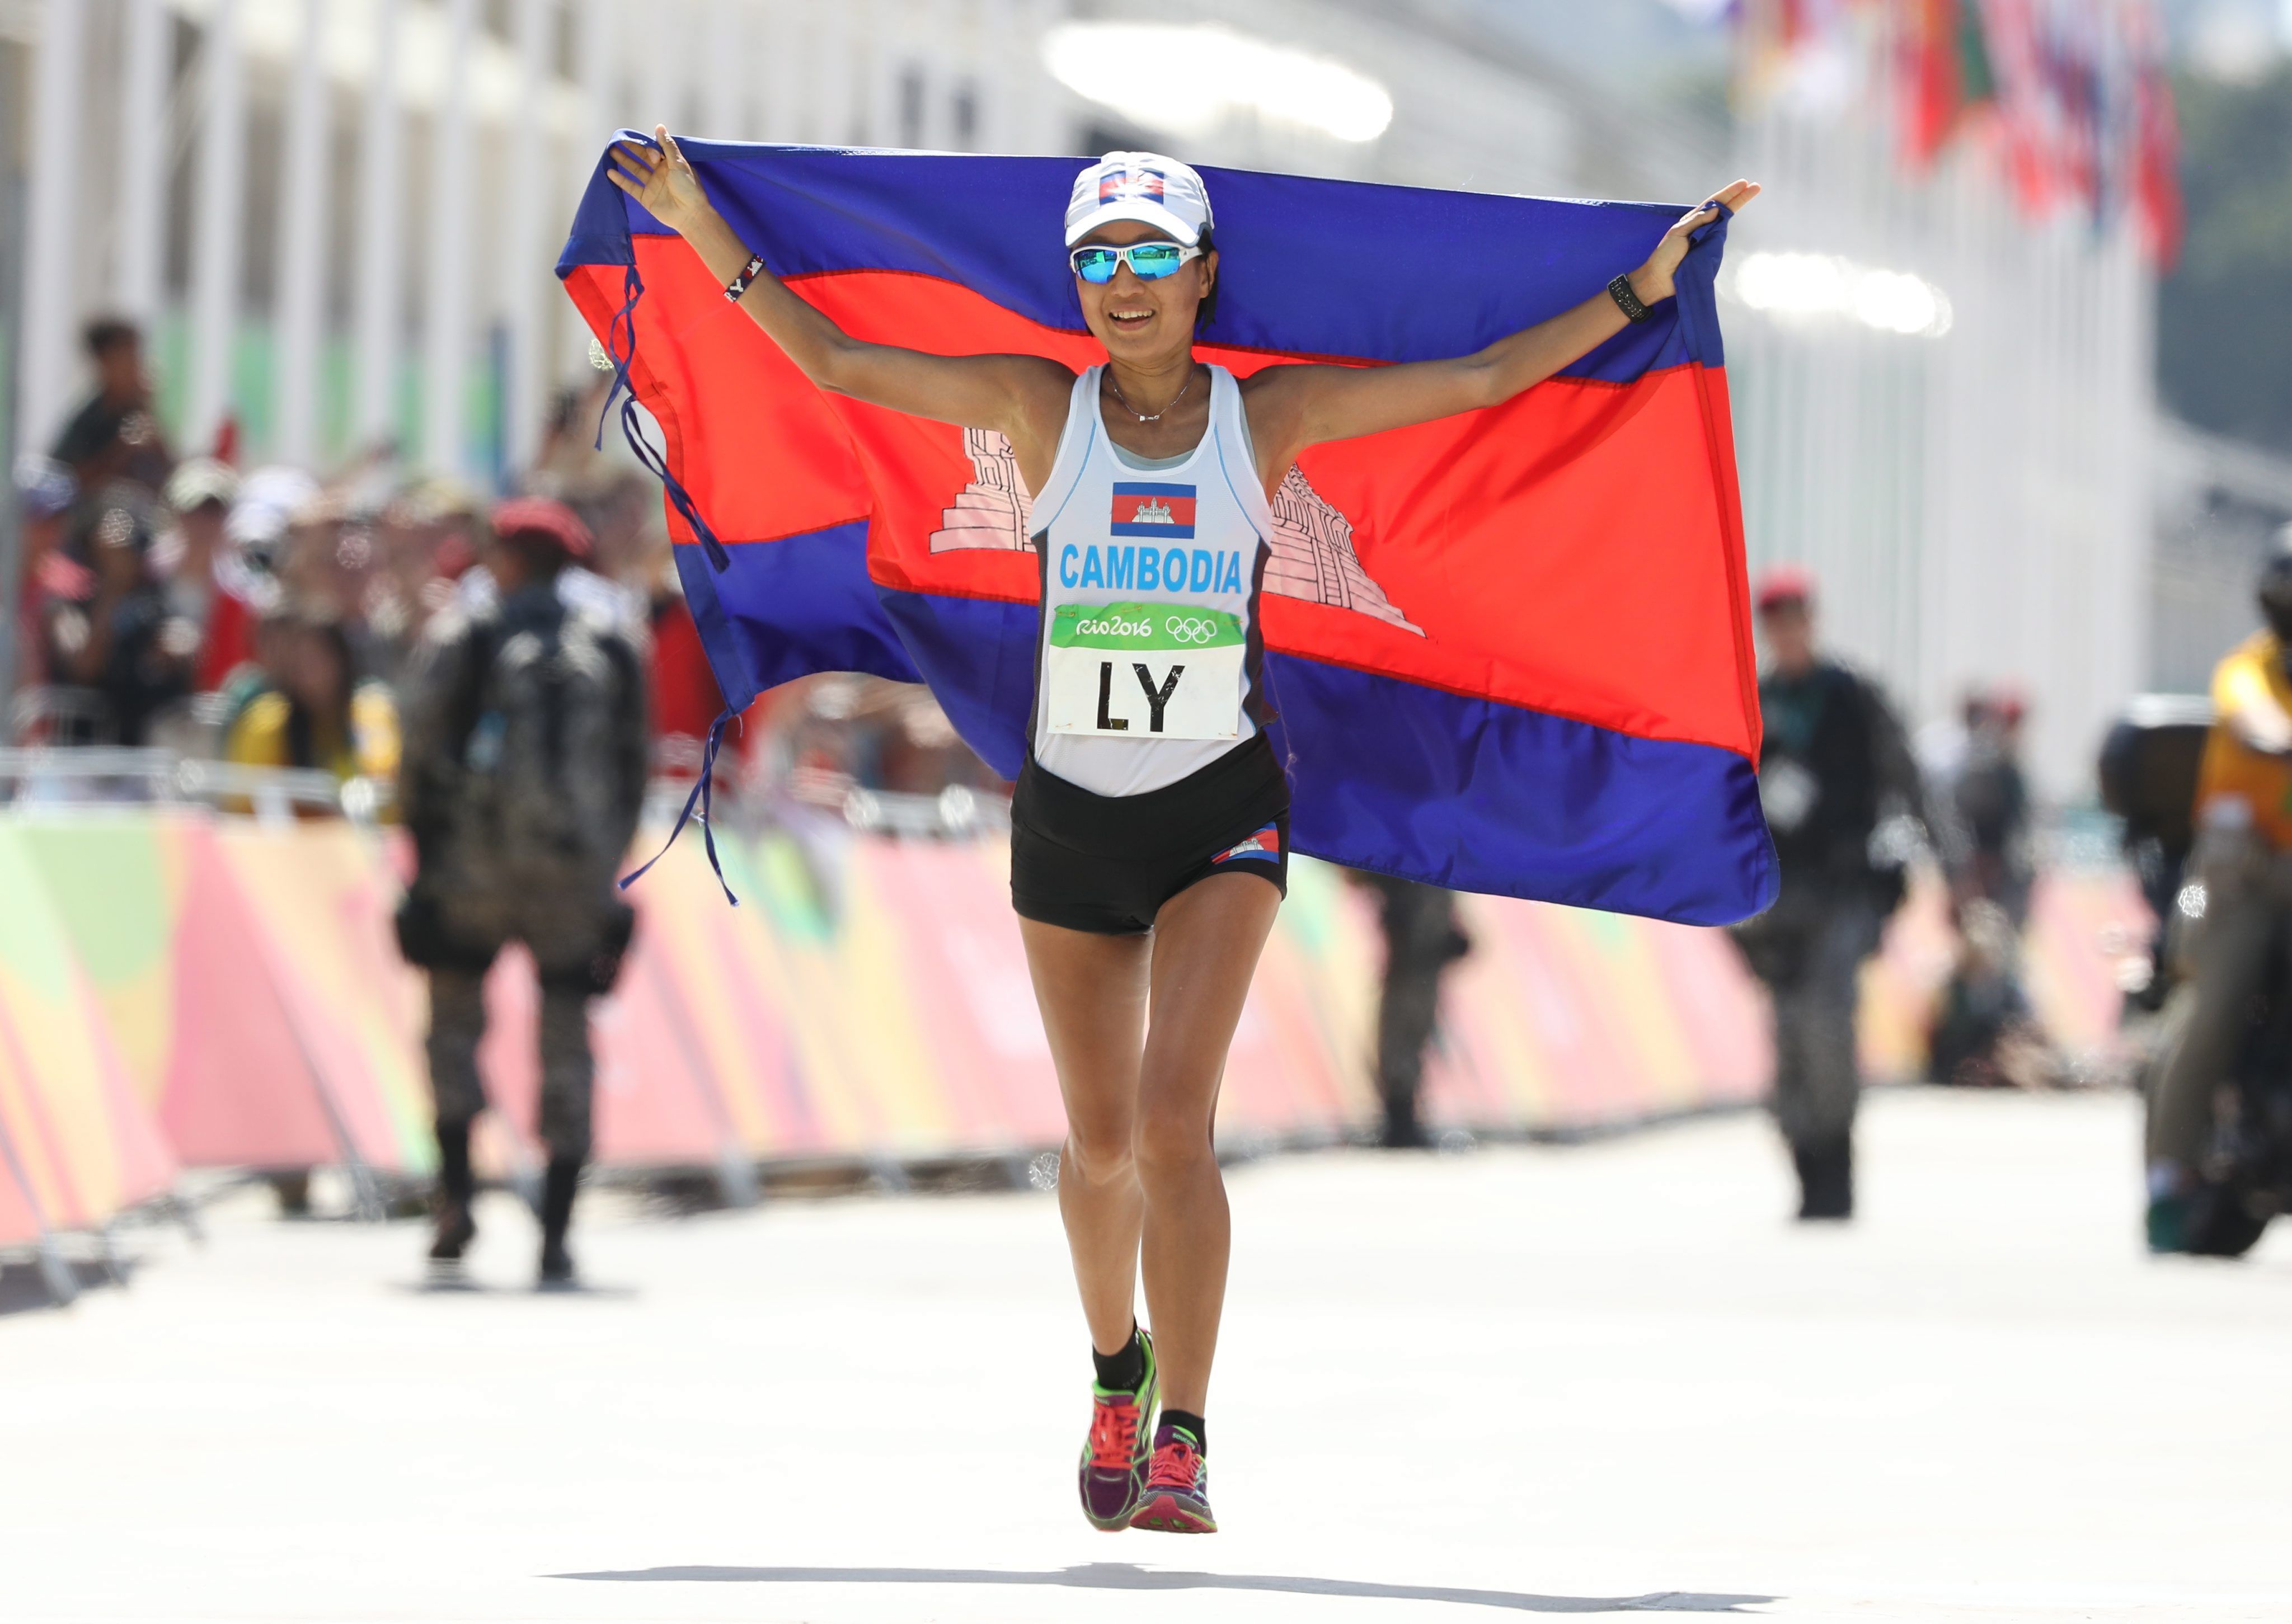 Nary Ly completa a maratona olímpica no Rio 2016